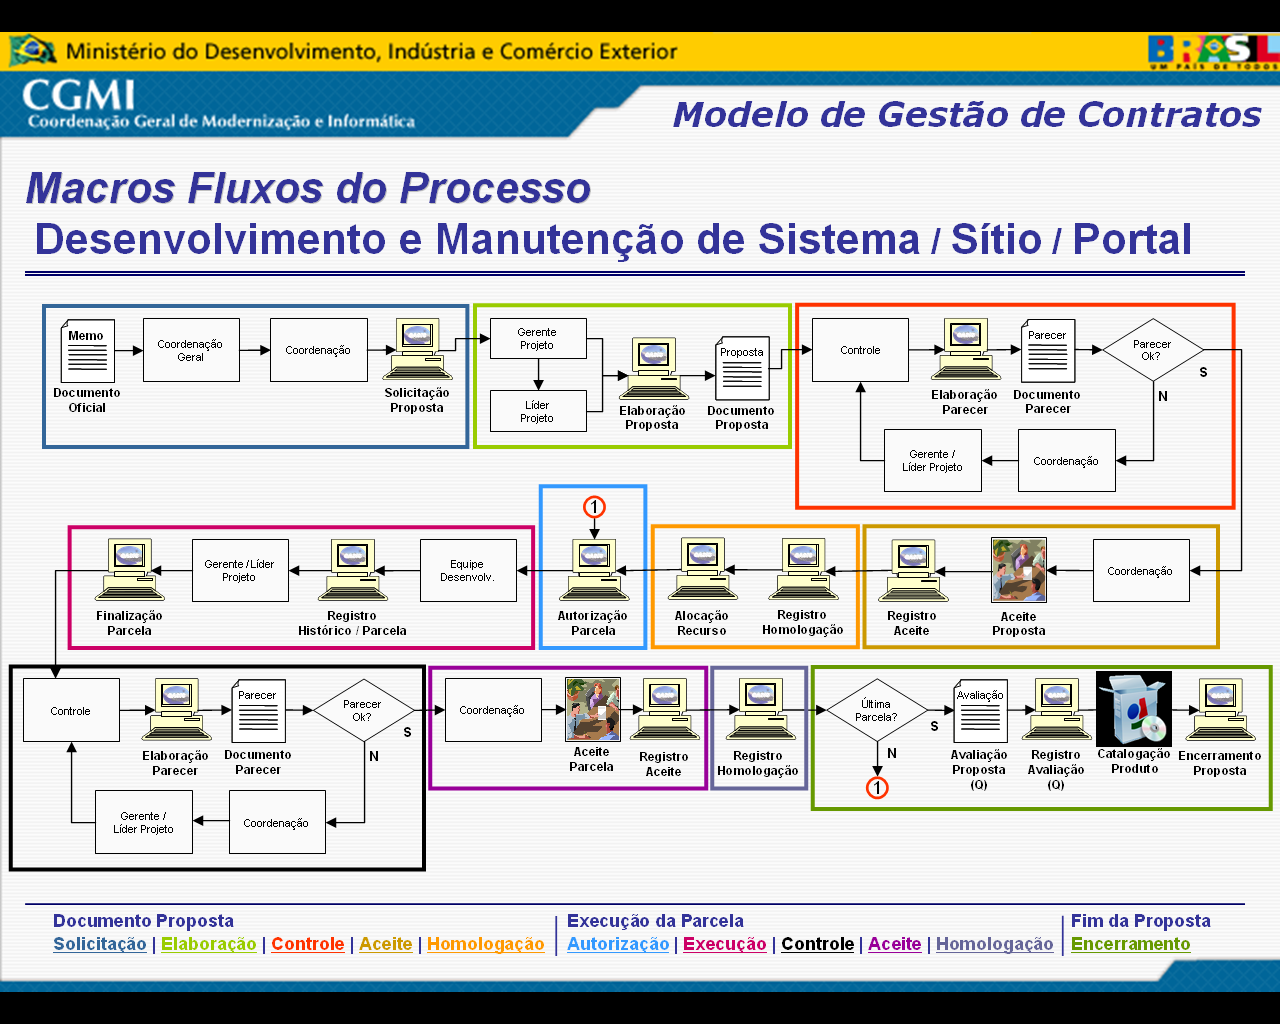 PRIMEIRA PARTE - PROJETO Introdução - Projeto O exemplo de fluxo de projeto está baseado em um contrato de desenvolvimento e manutenção de sistemas, levando em consideração que a empresa contratada